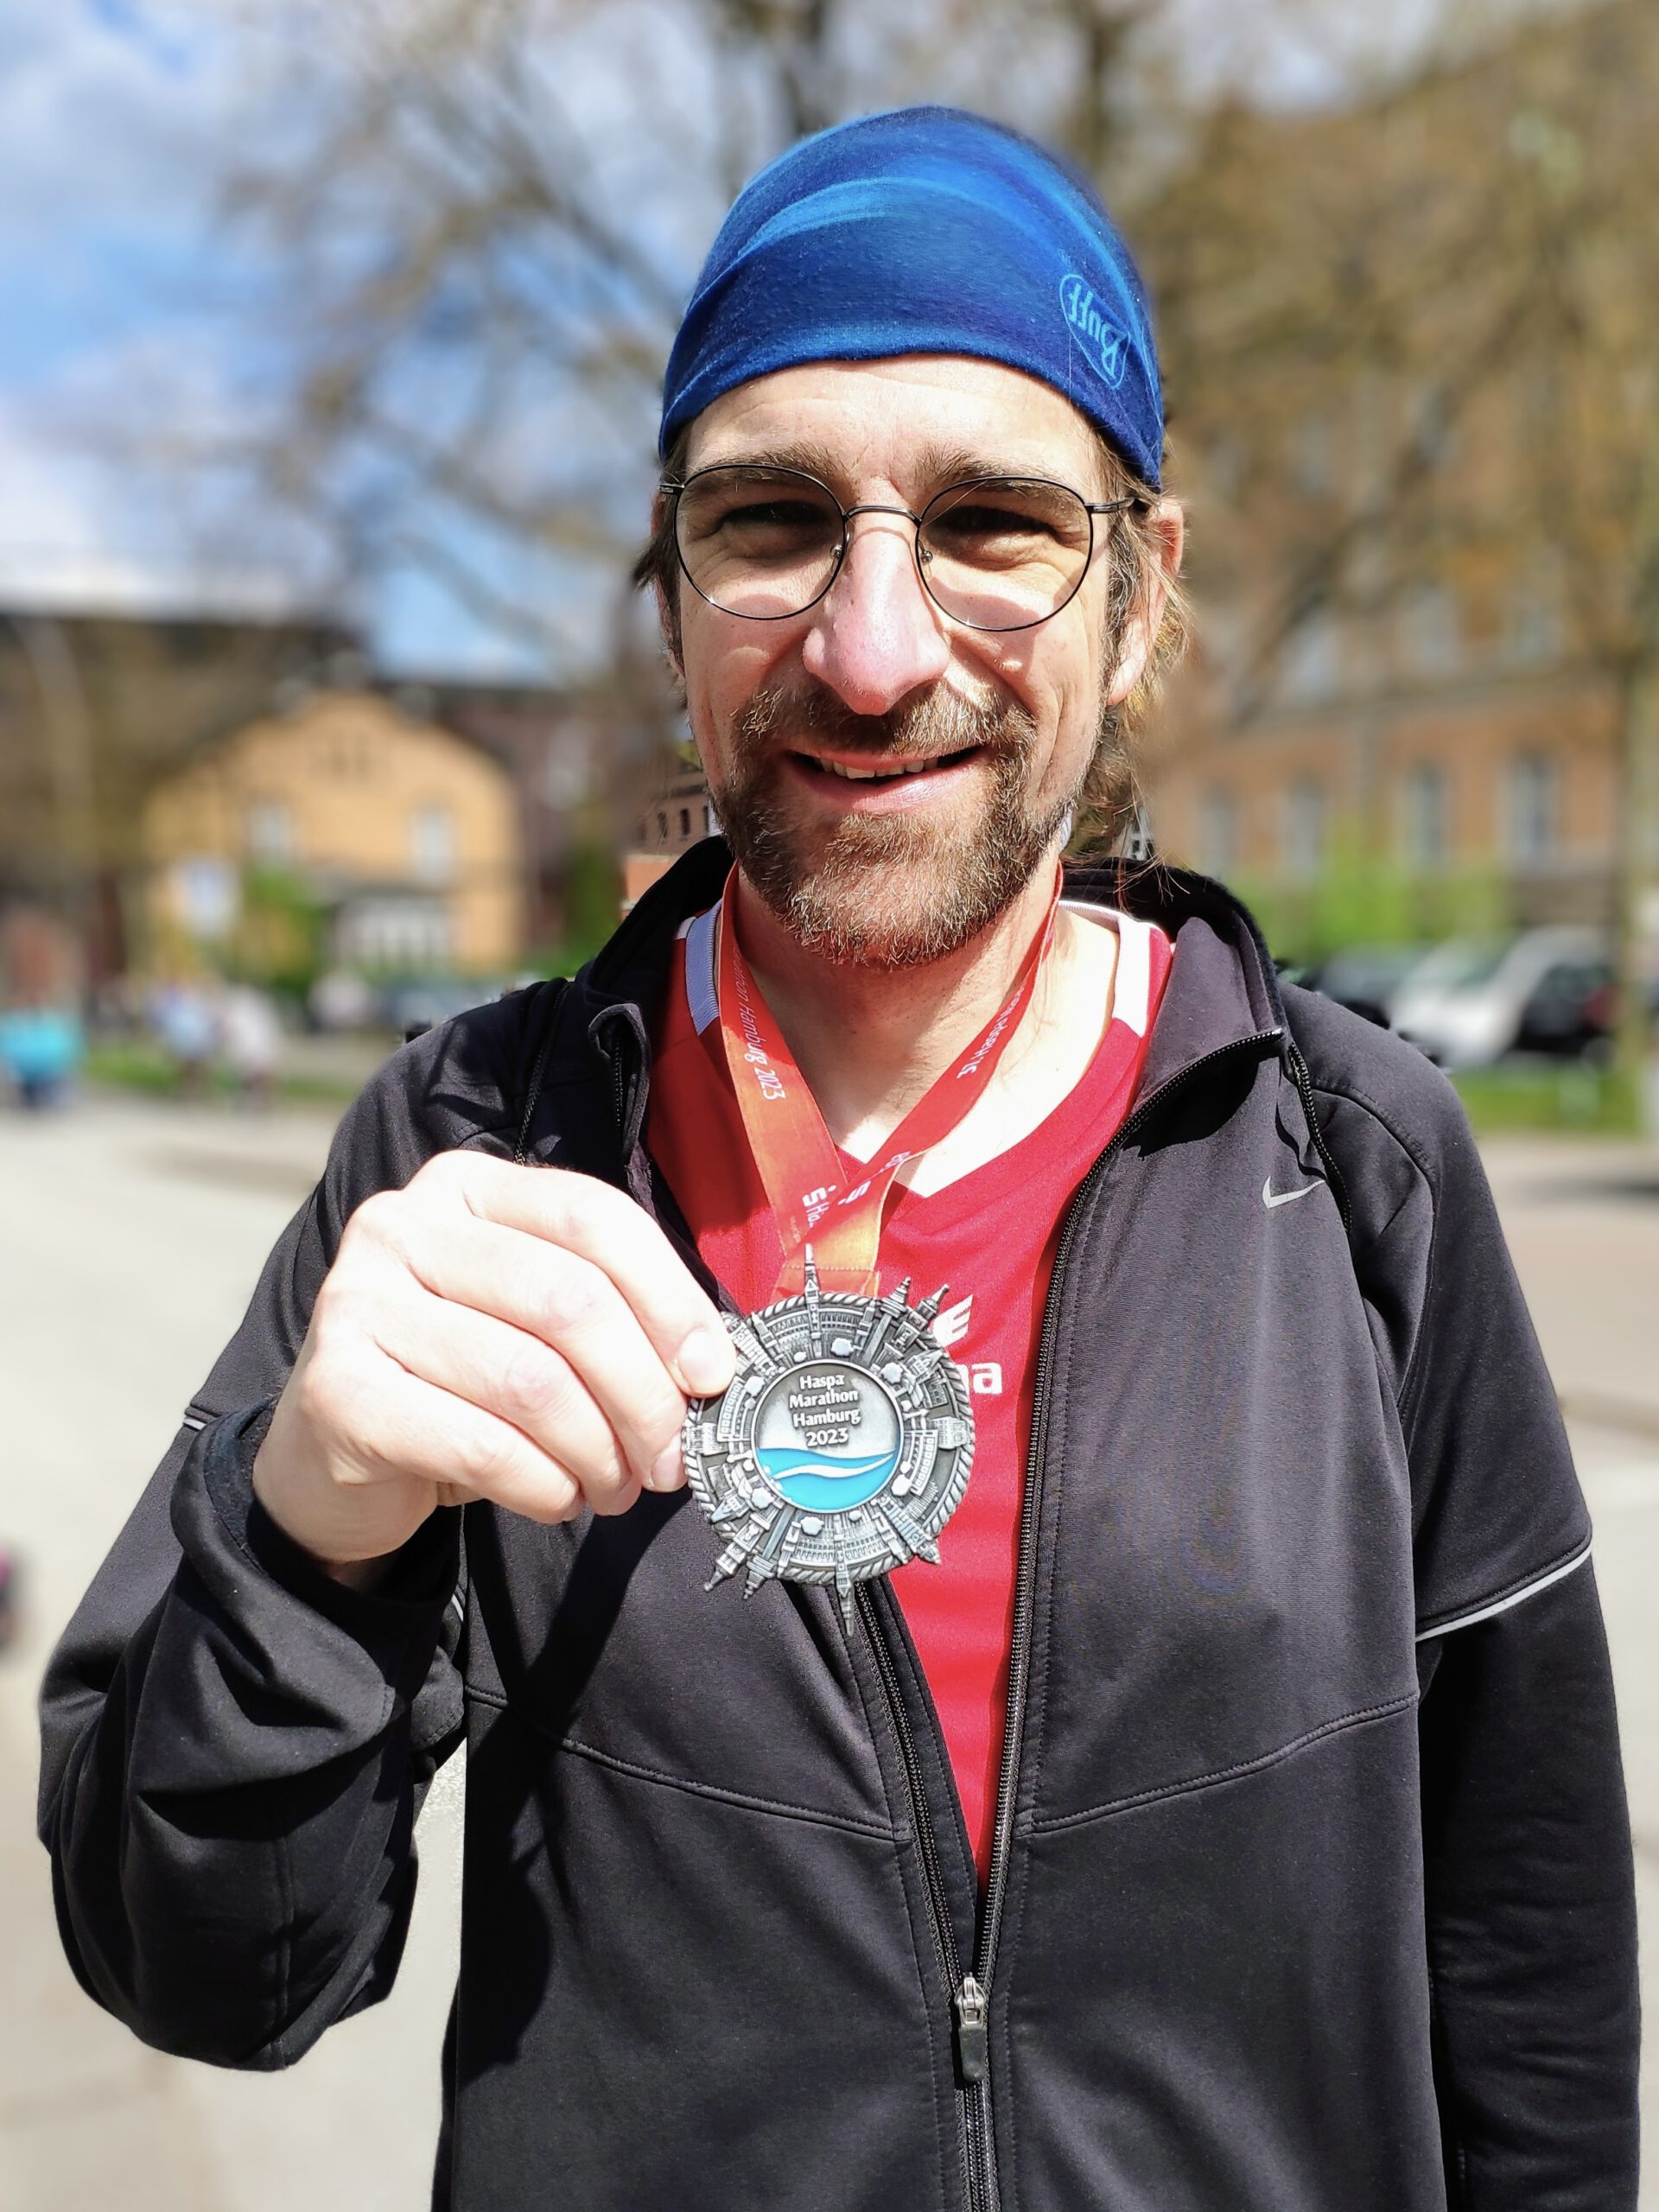 Stefan mit der Marathon-Medaille<br />
Bild: Stefan Gesigora